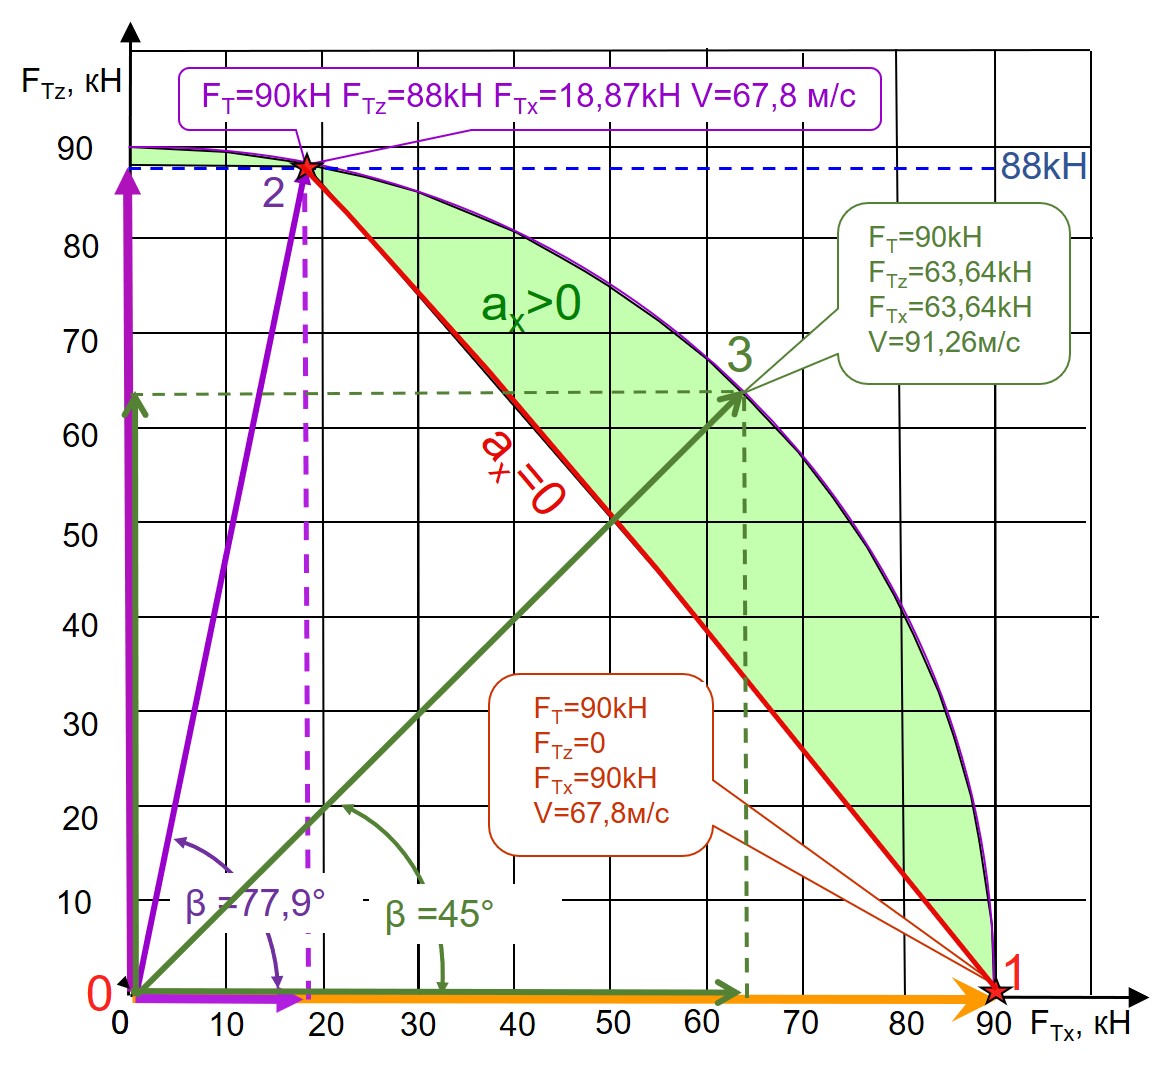 Диаграмма использования траста величиной 90 кН в продольной плоскости тангажа при движении квантомобиля весом 88 кН по ОП с fк0 = 0,3 